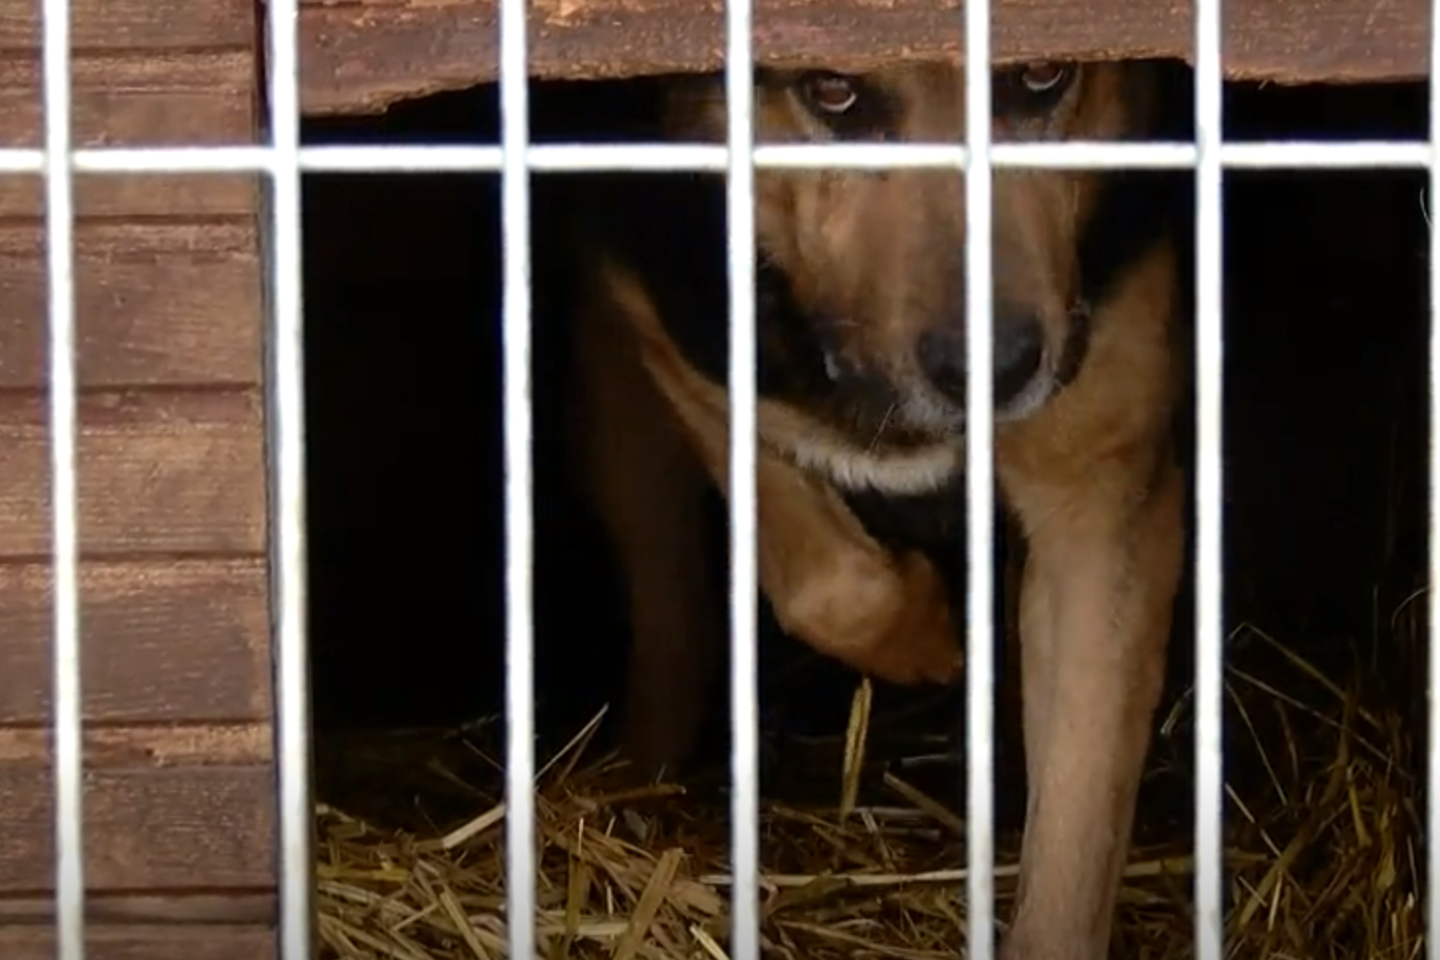 Panevėžio rajone Bistrampolio dvare palaidiems šunims išpjovus danielius, paaiškėjo, kad savaitgalį neįmanoma sulaukti pagalbos.<br> Stop kadras